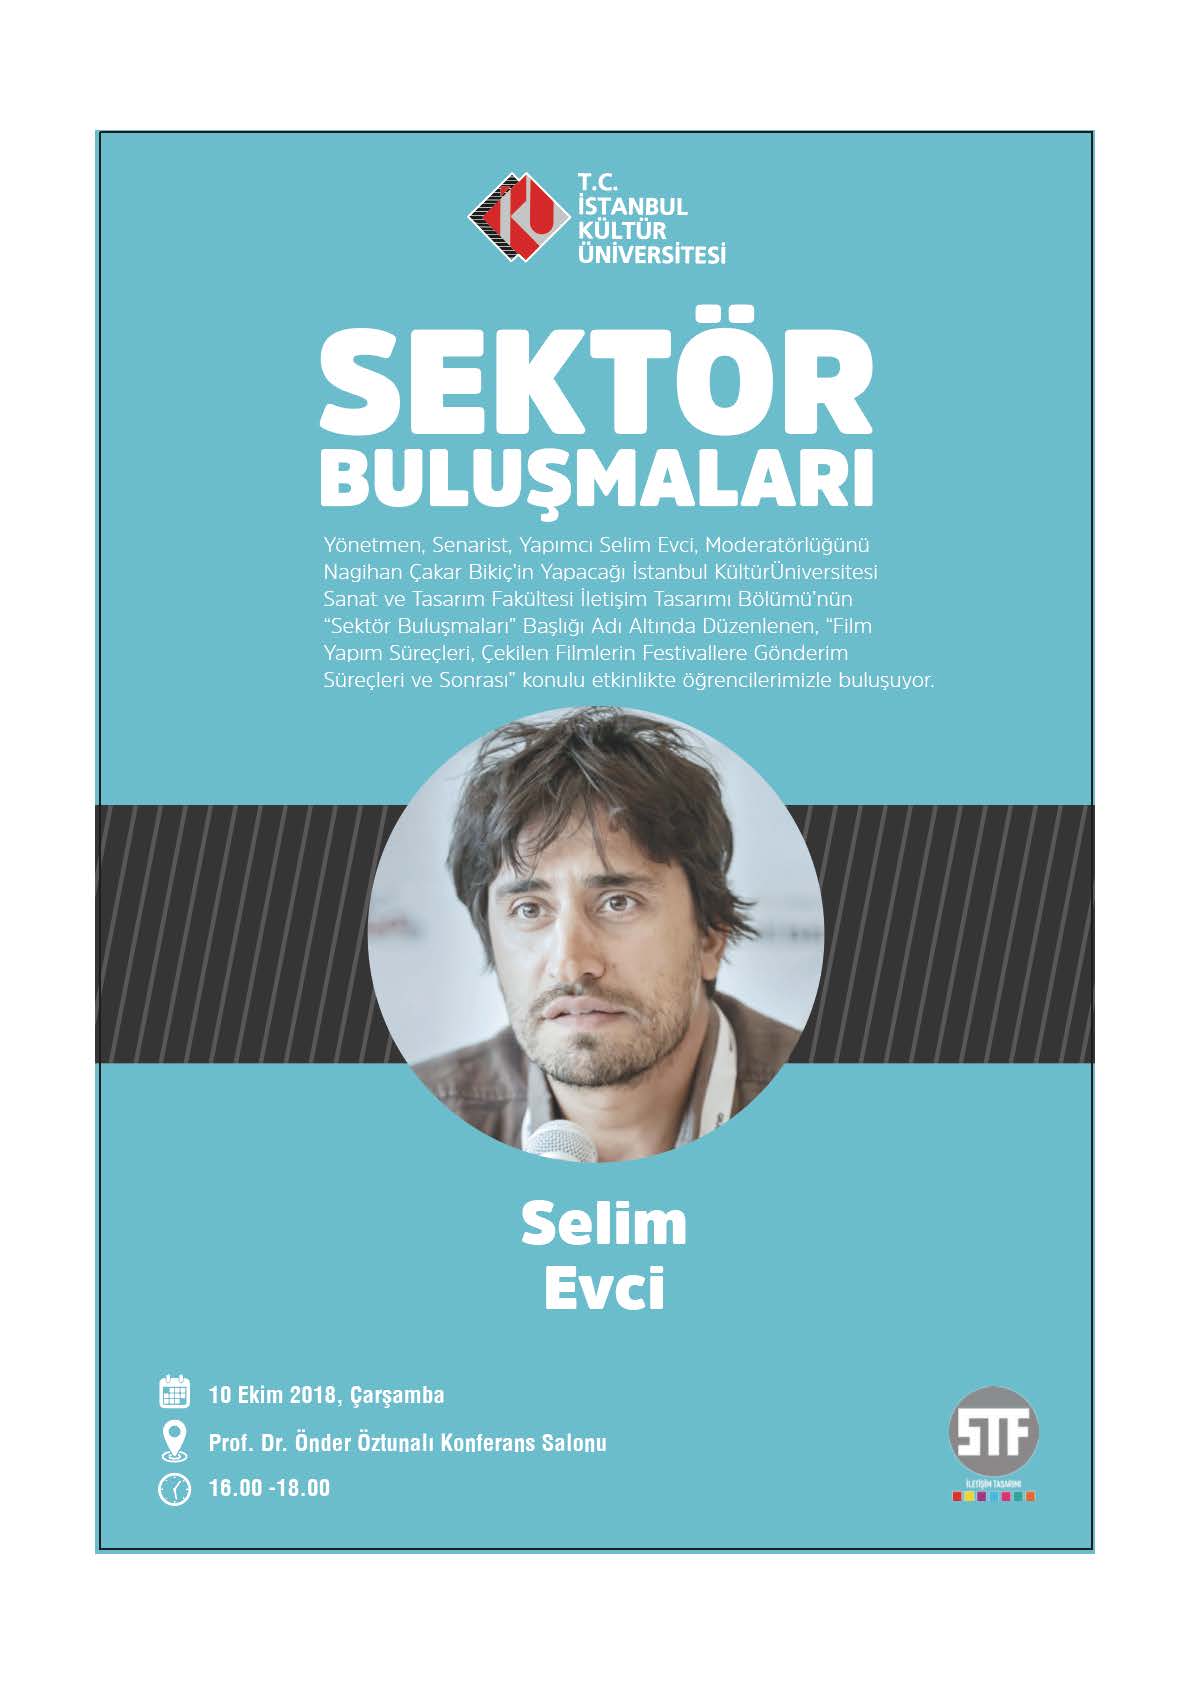 Sektör Buluşmaları "Selim Evci"